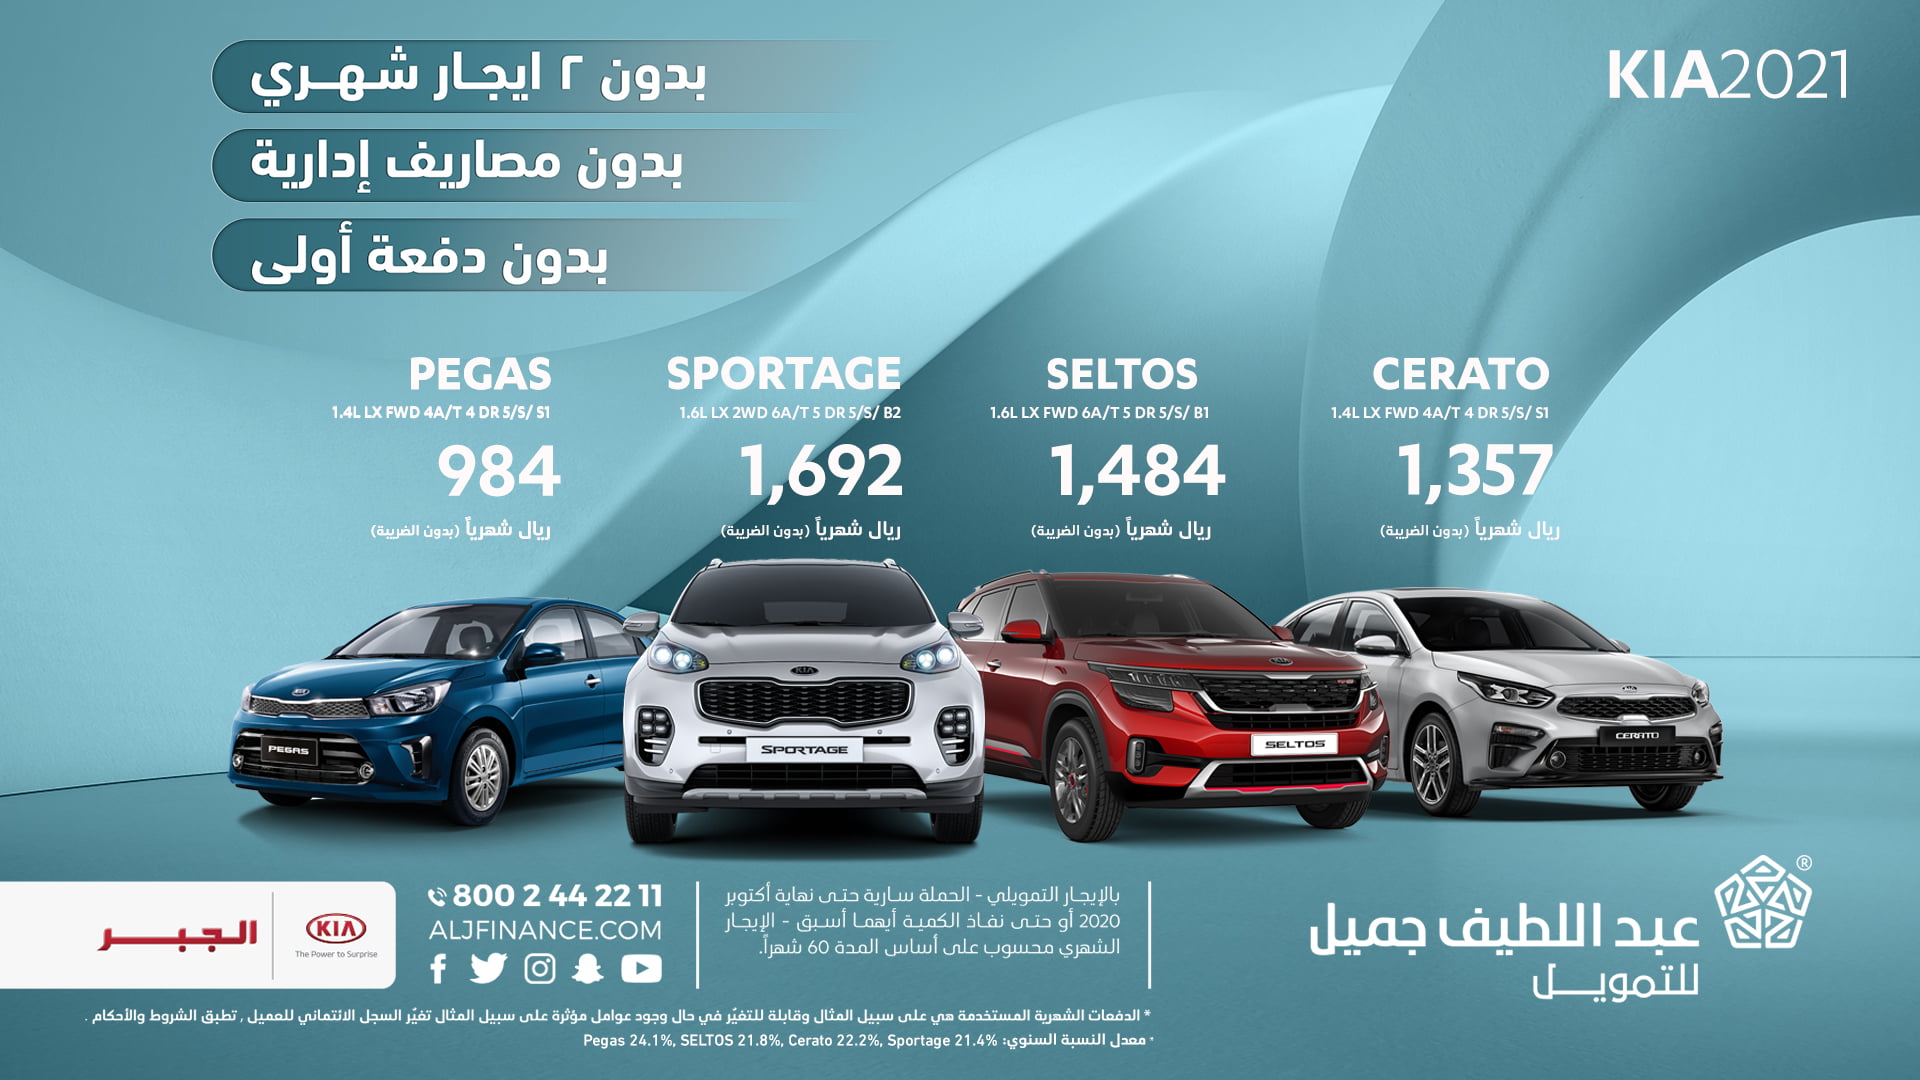 - عروض السيارات : عروض عبداللطيف جميل علي سيارات كيا لشهر اكتوبر 2020